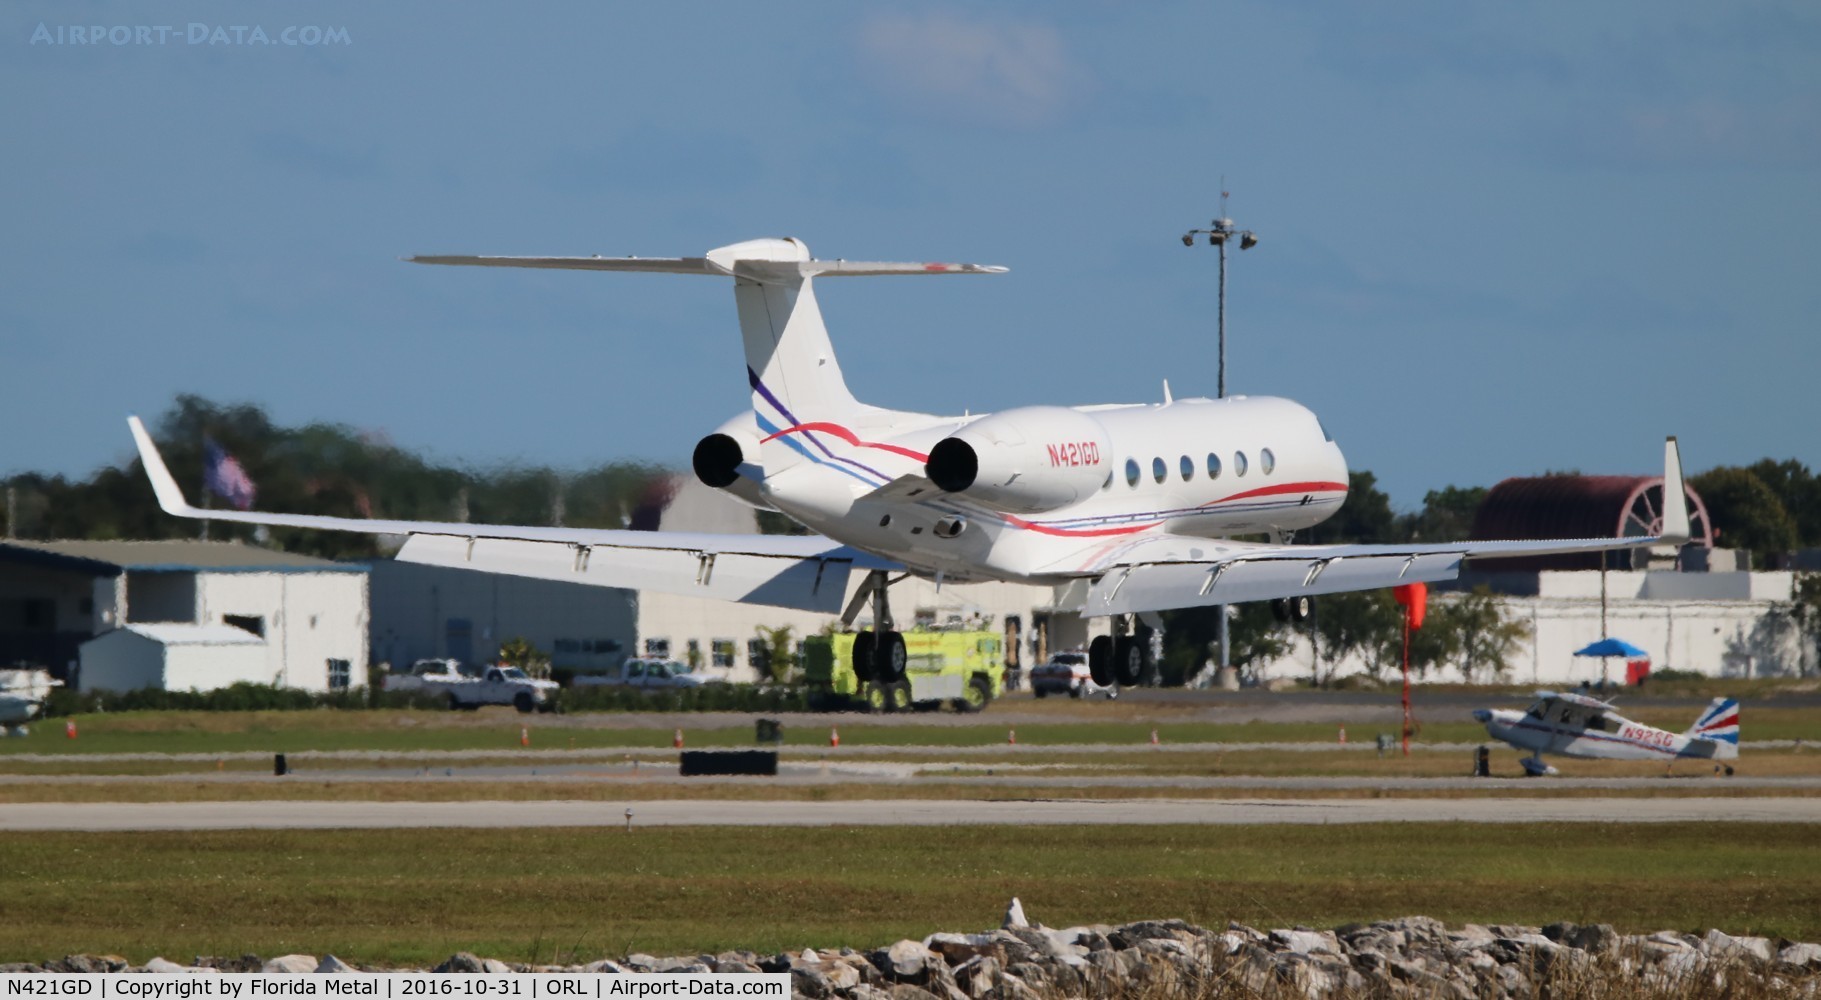 N421GD, 2013 Gulfstream Aerospace GV-SP (G550) C/N 5421, Gulfstream 550